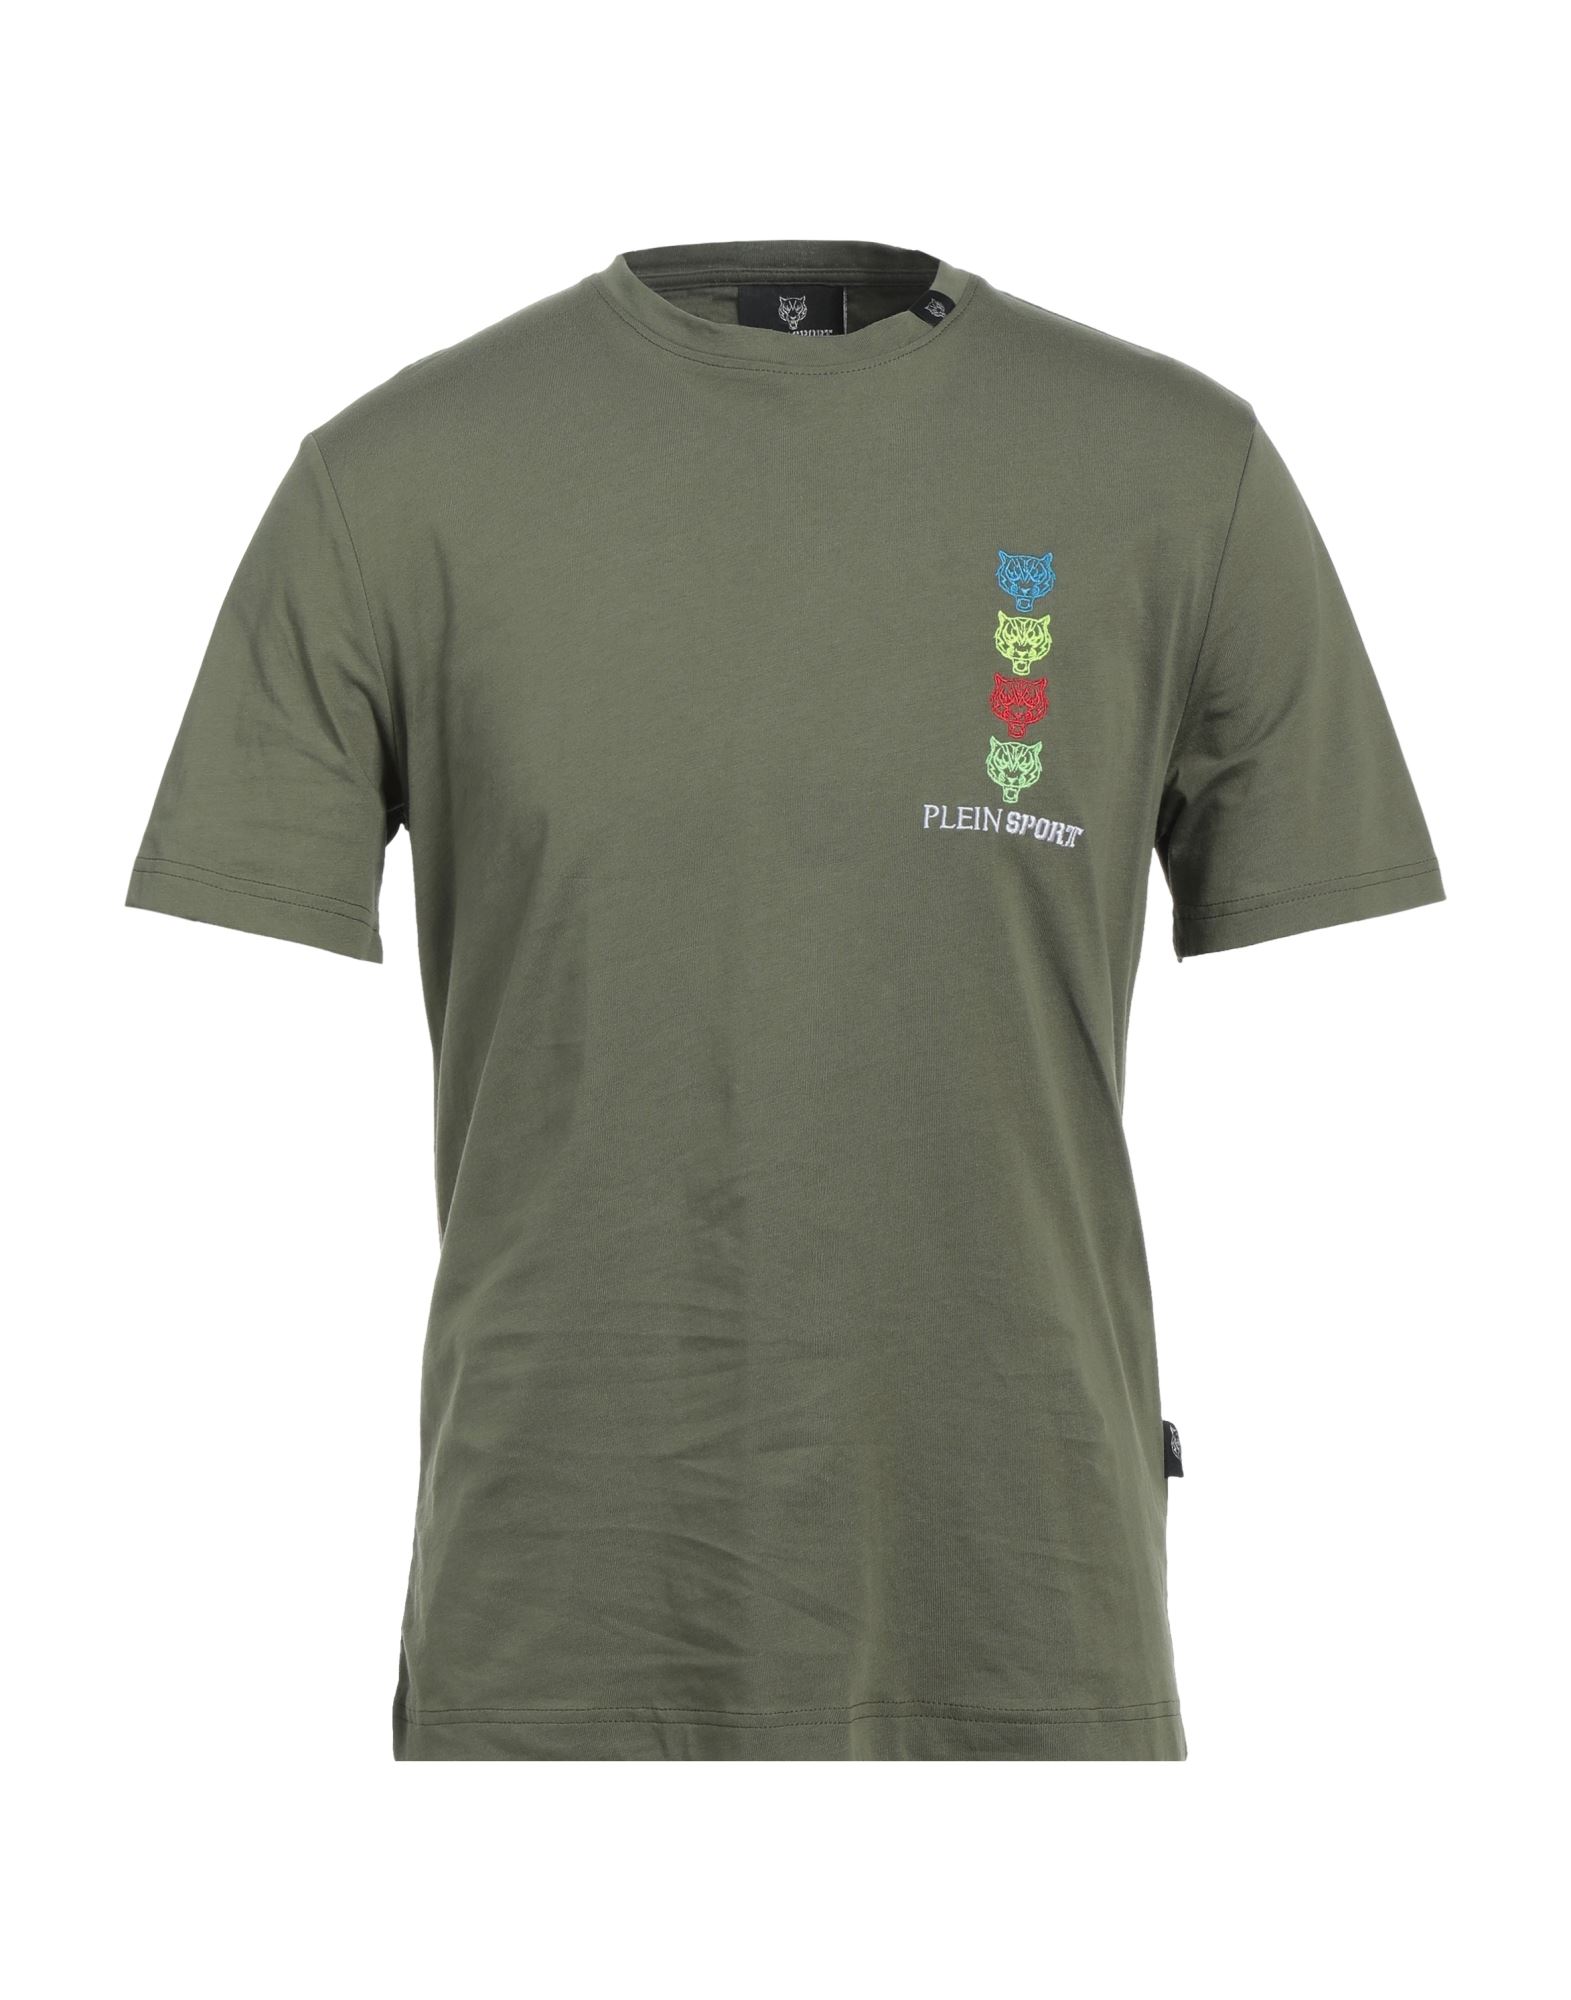 PLEIN SPORT T-shirts Herren Militärgrün von PLEIN SPORT